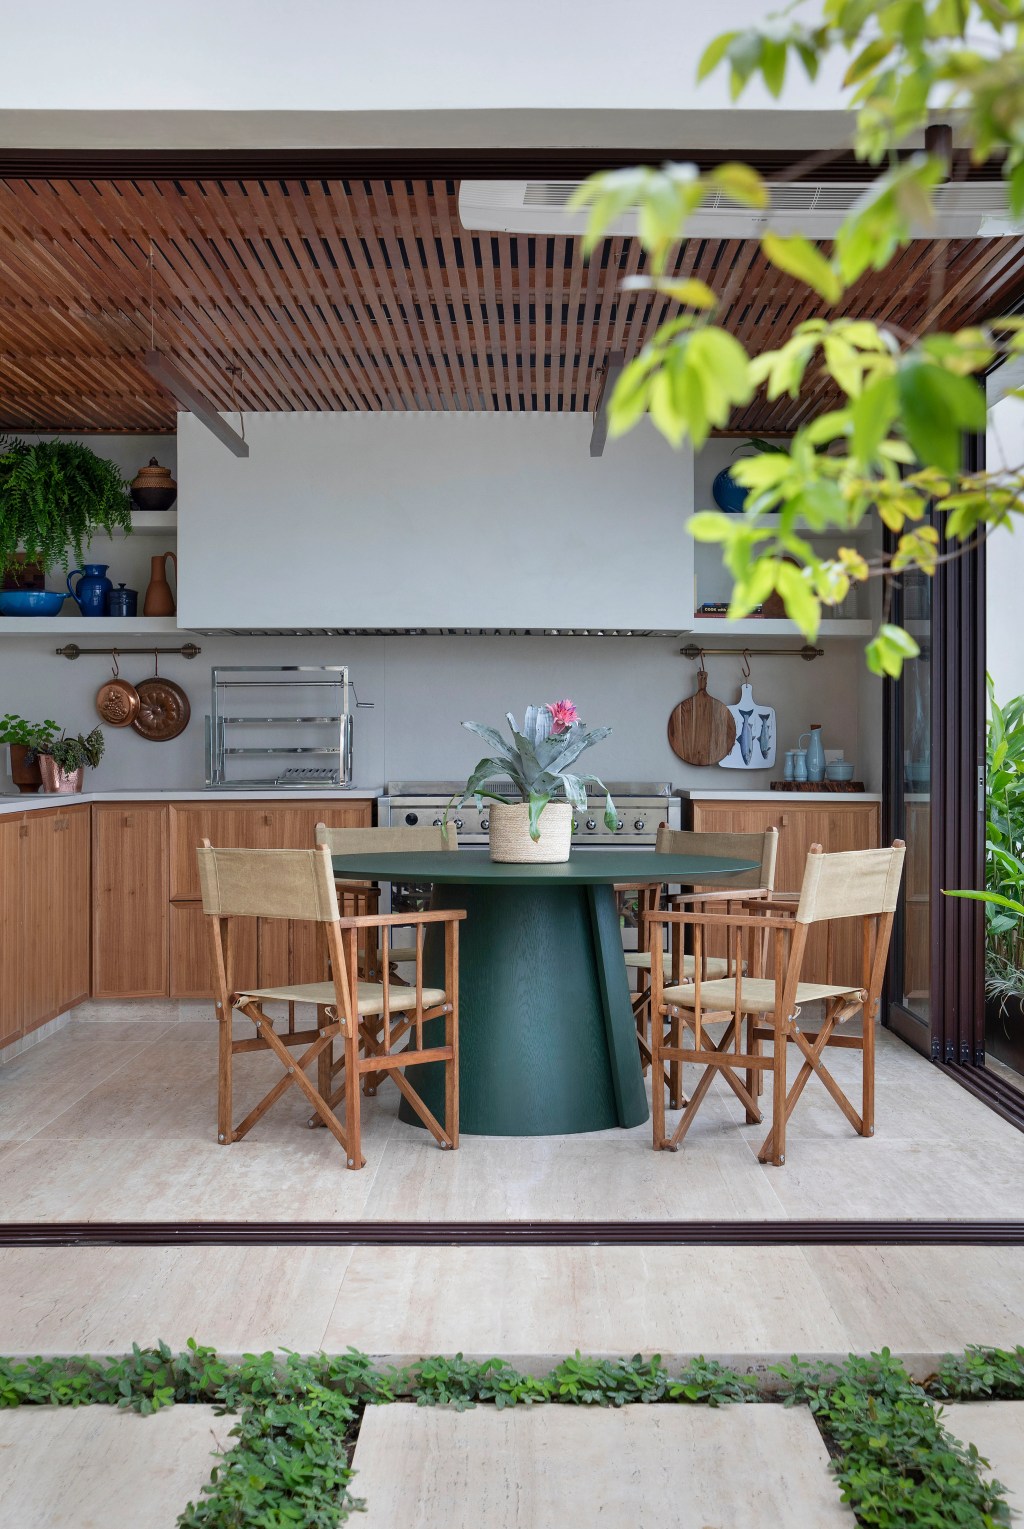 Duplex ganha espaço gourmet com pergolado, jardim com grama e piscina